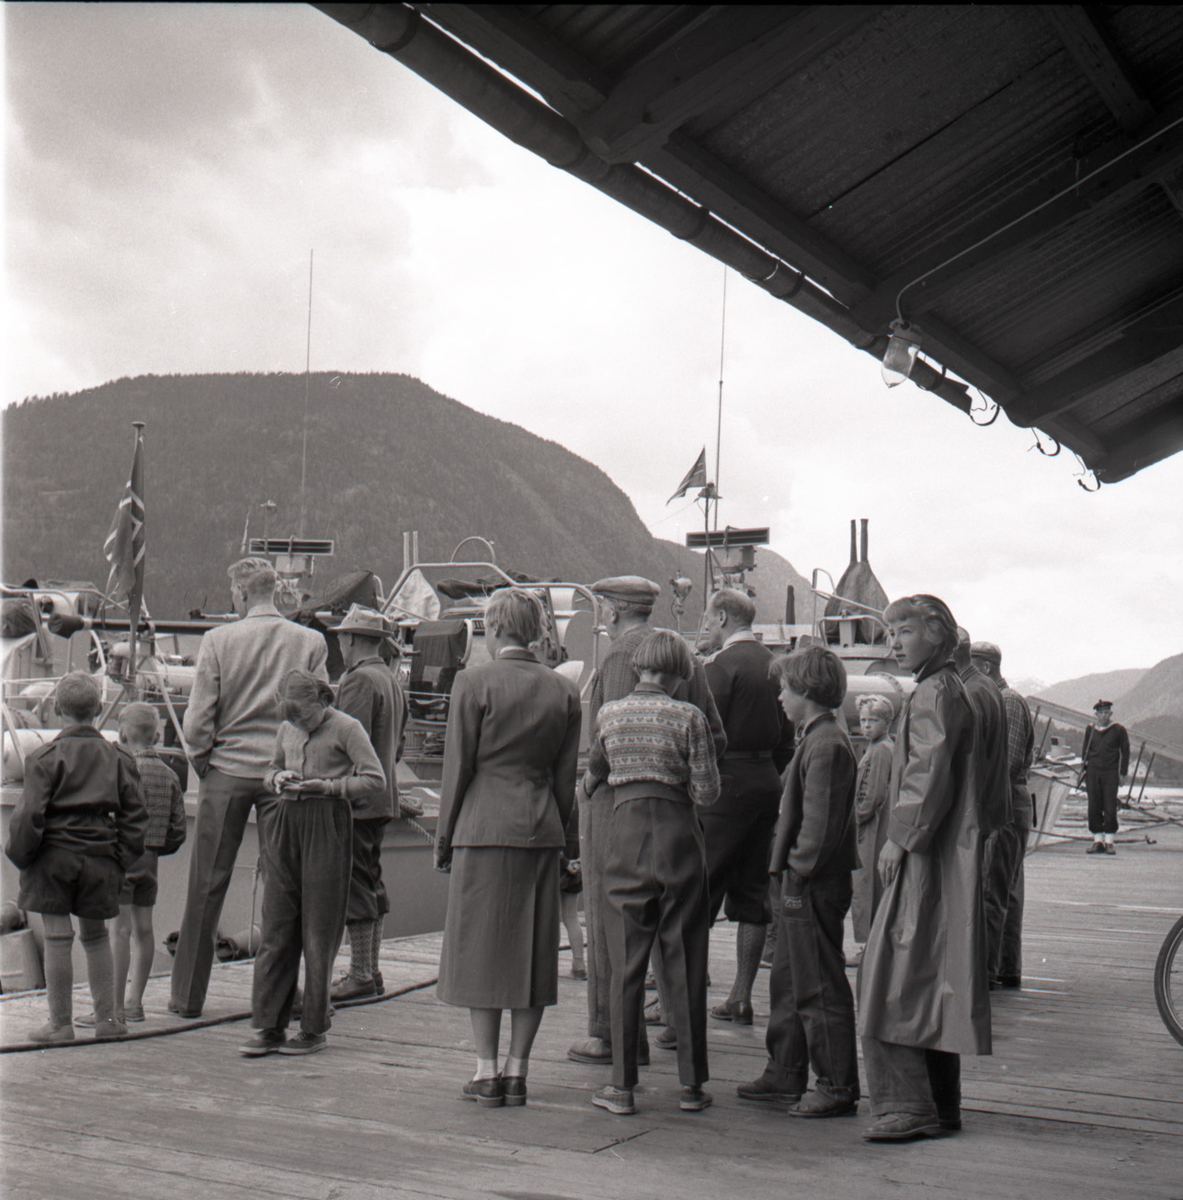 Samlefoto: Elco-klasse MTB-er gjennom Bandak-kanalen i juli 1953.
Sivile.